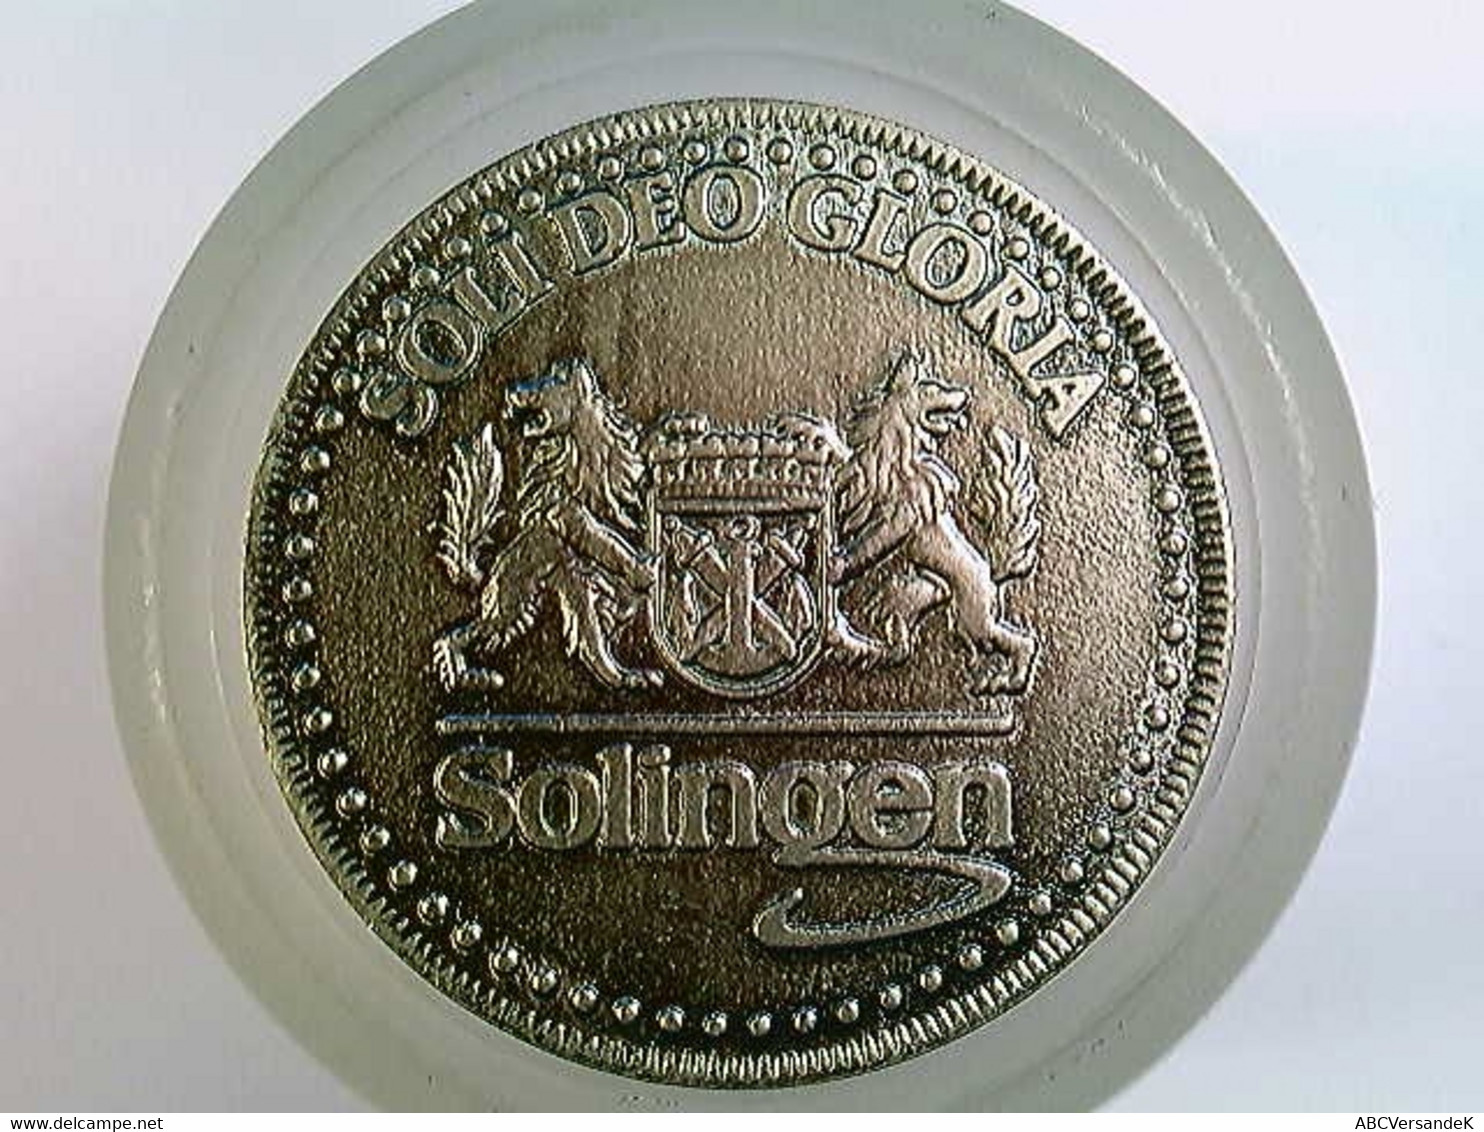 Medaille Solingen, Trimm Taler 1985 - Numismatik